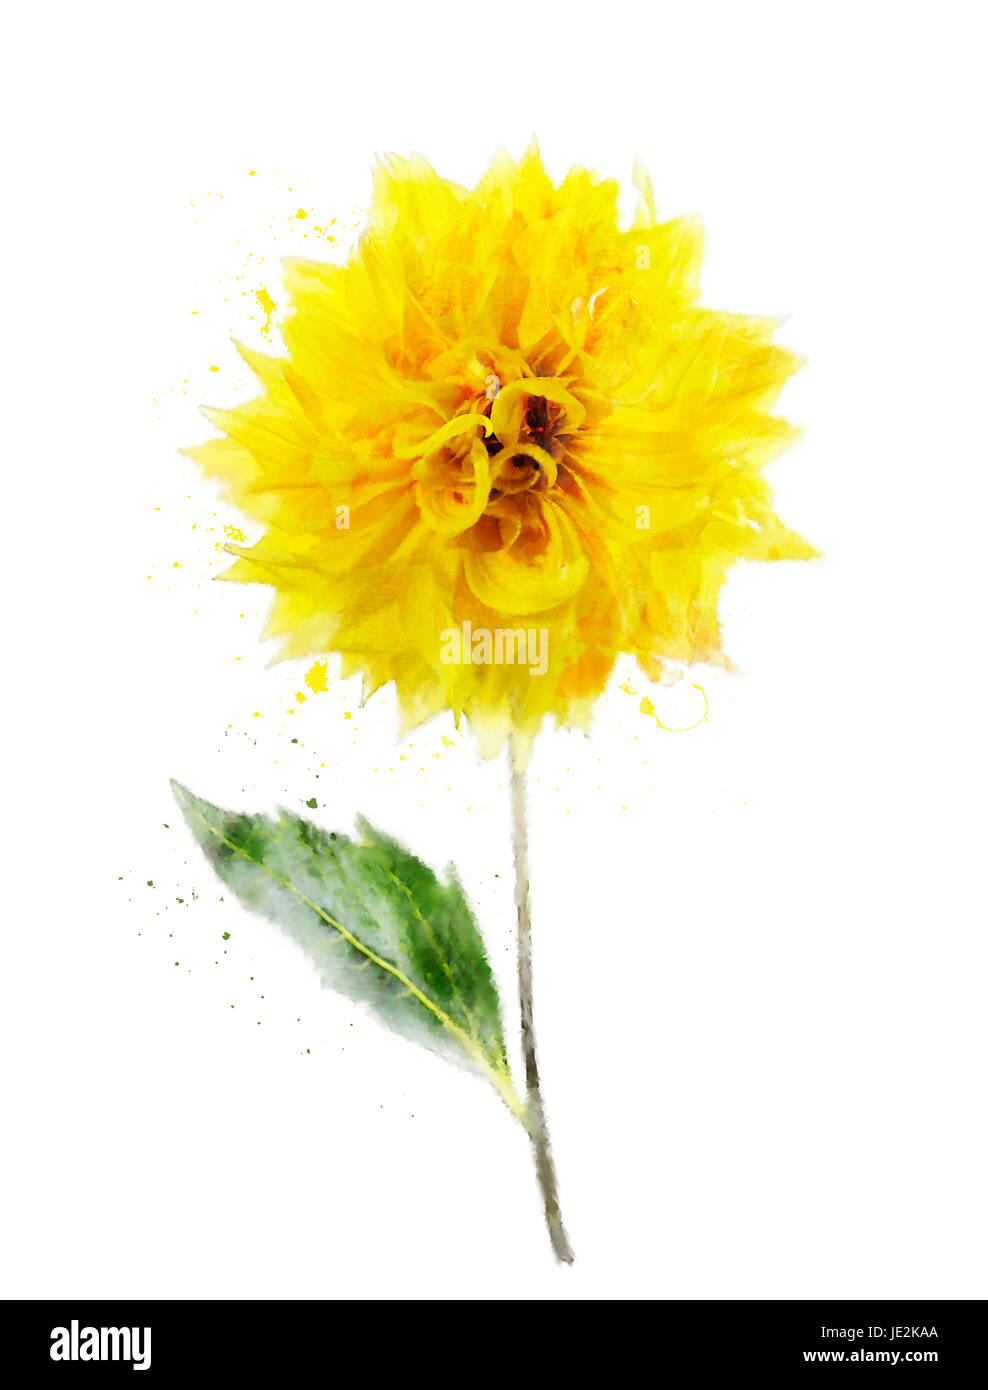 Aquarelle peinture digitale de Dahlia jaune Banque D'Images